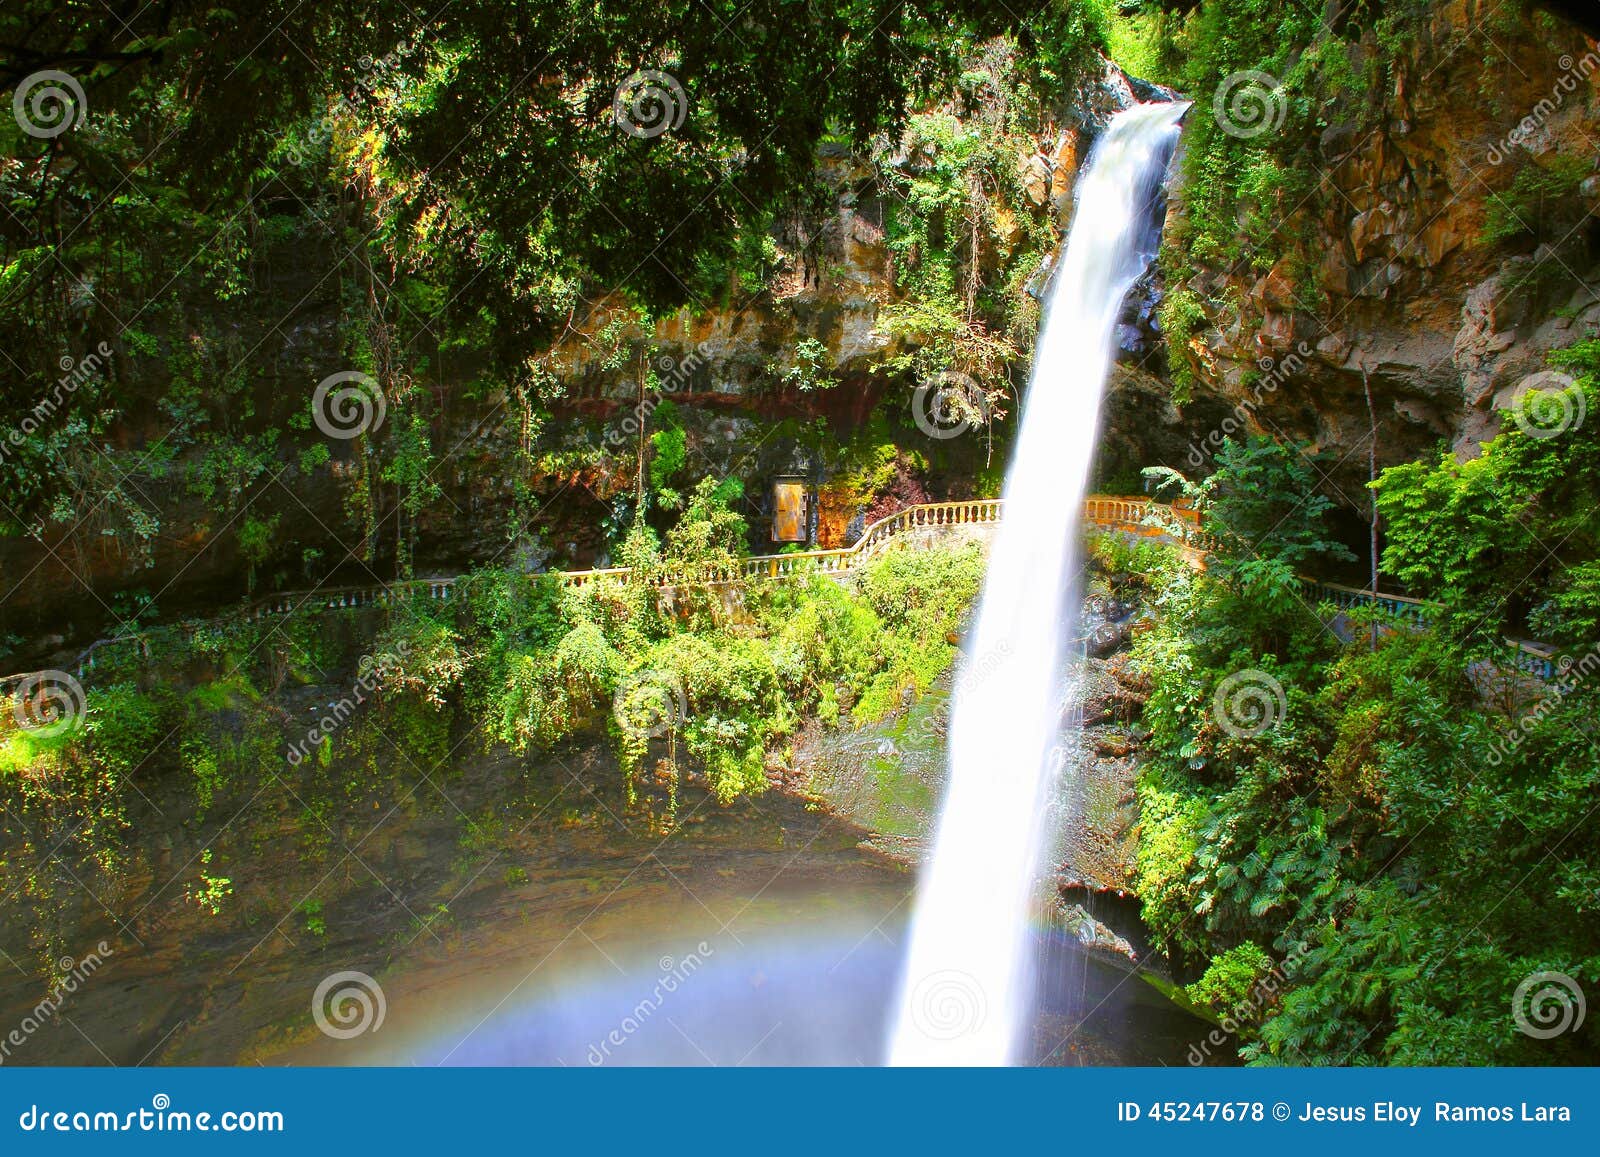 salto de san anton waterfall in cuernavaca morelos ii